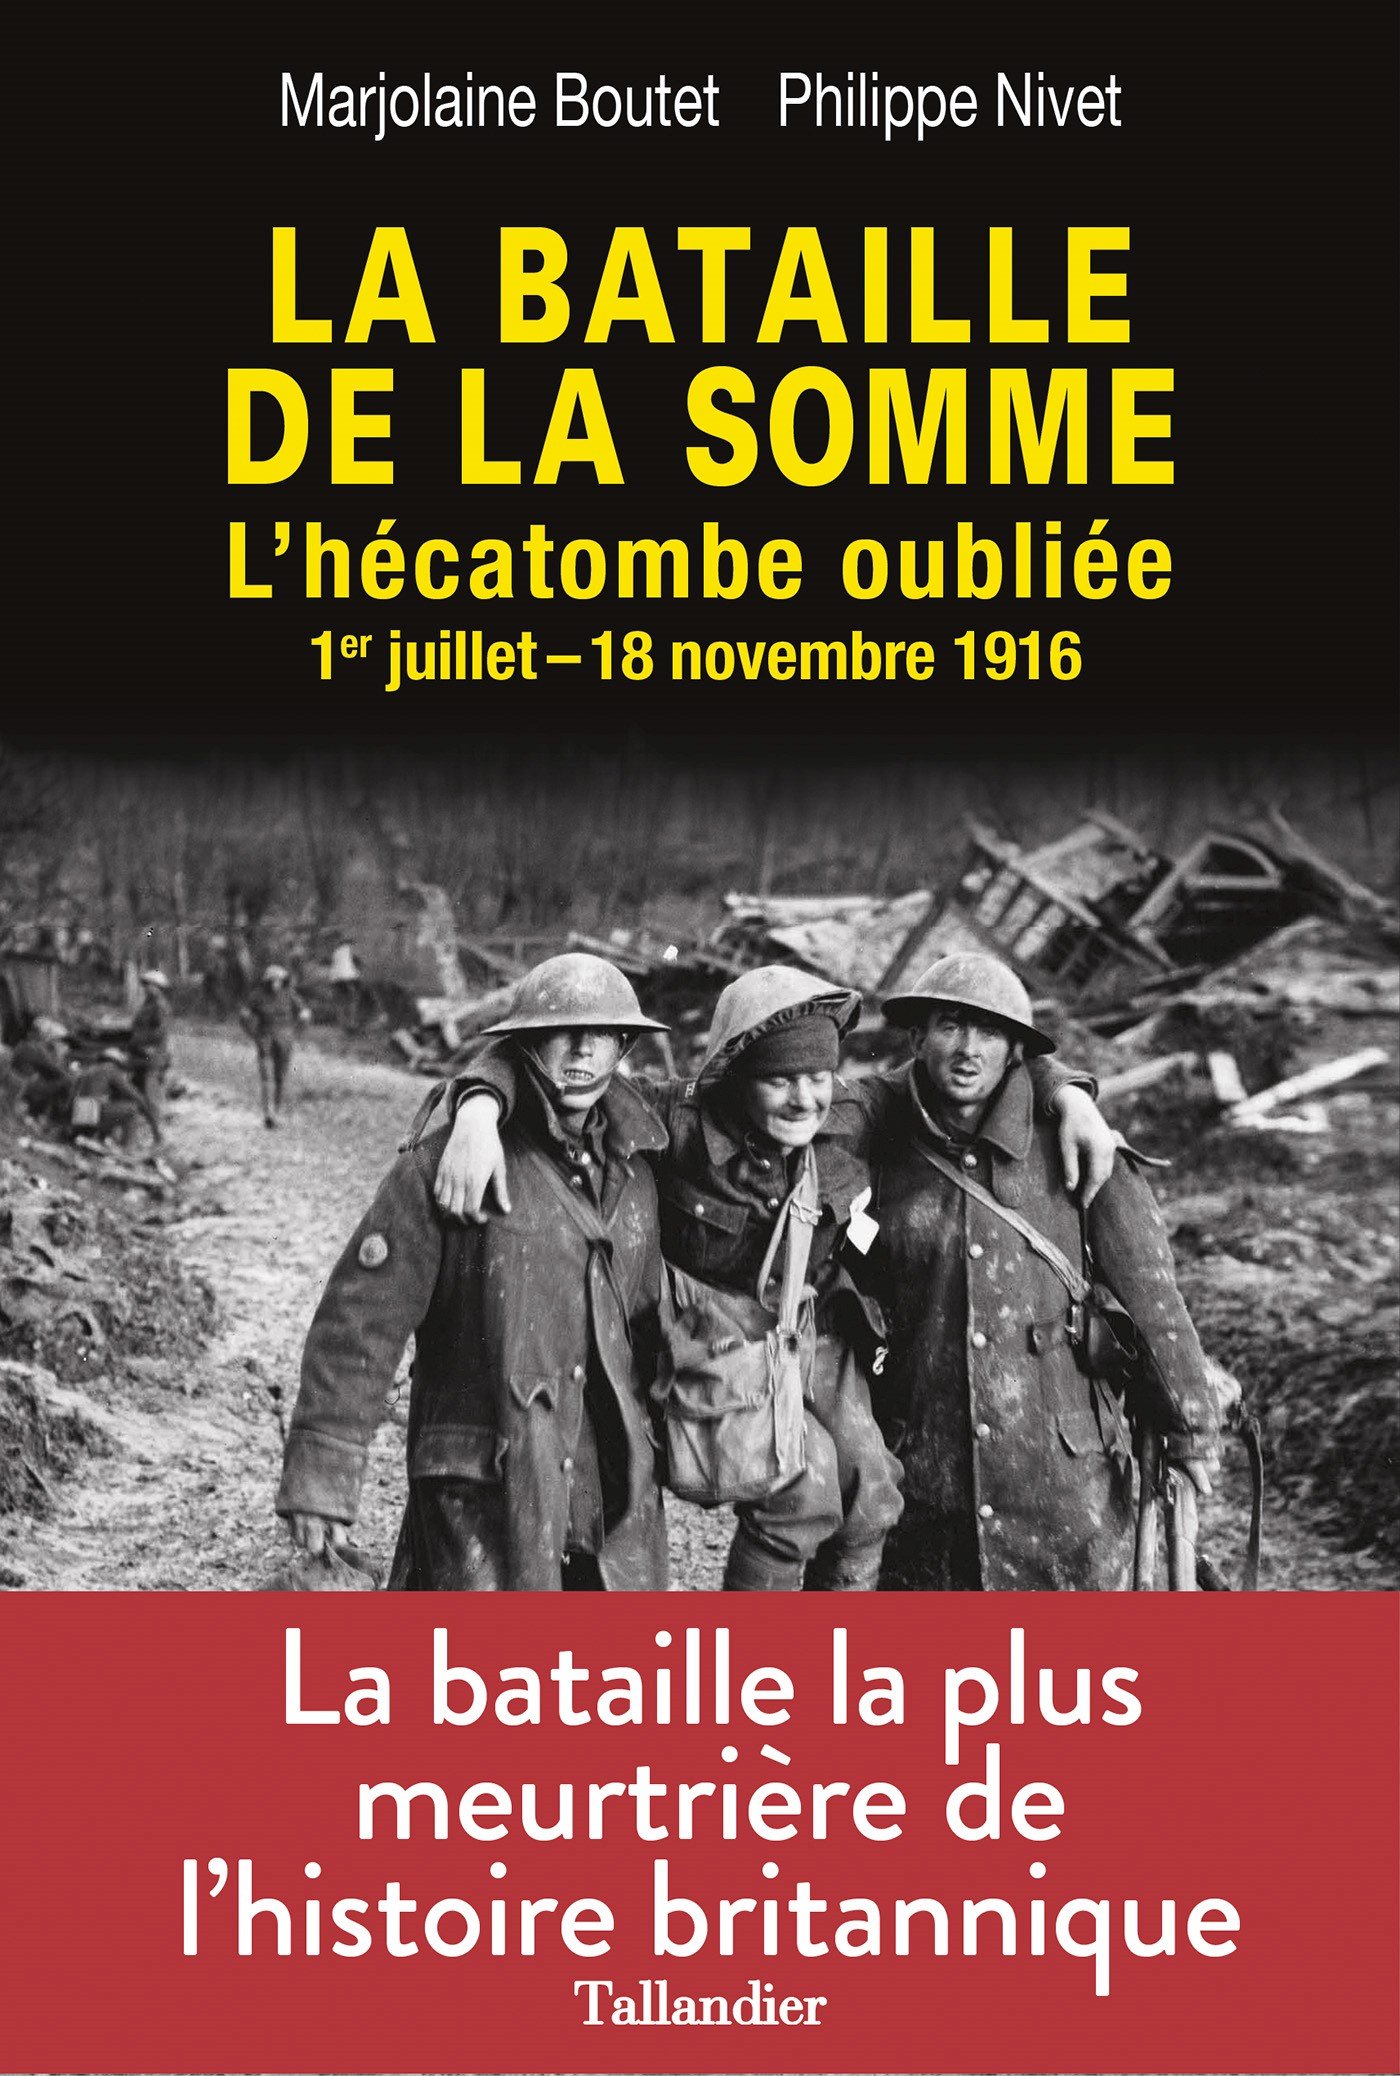 La bataille de la Somme Boutet Nivet